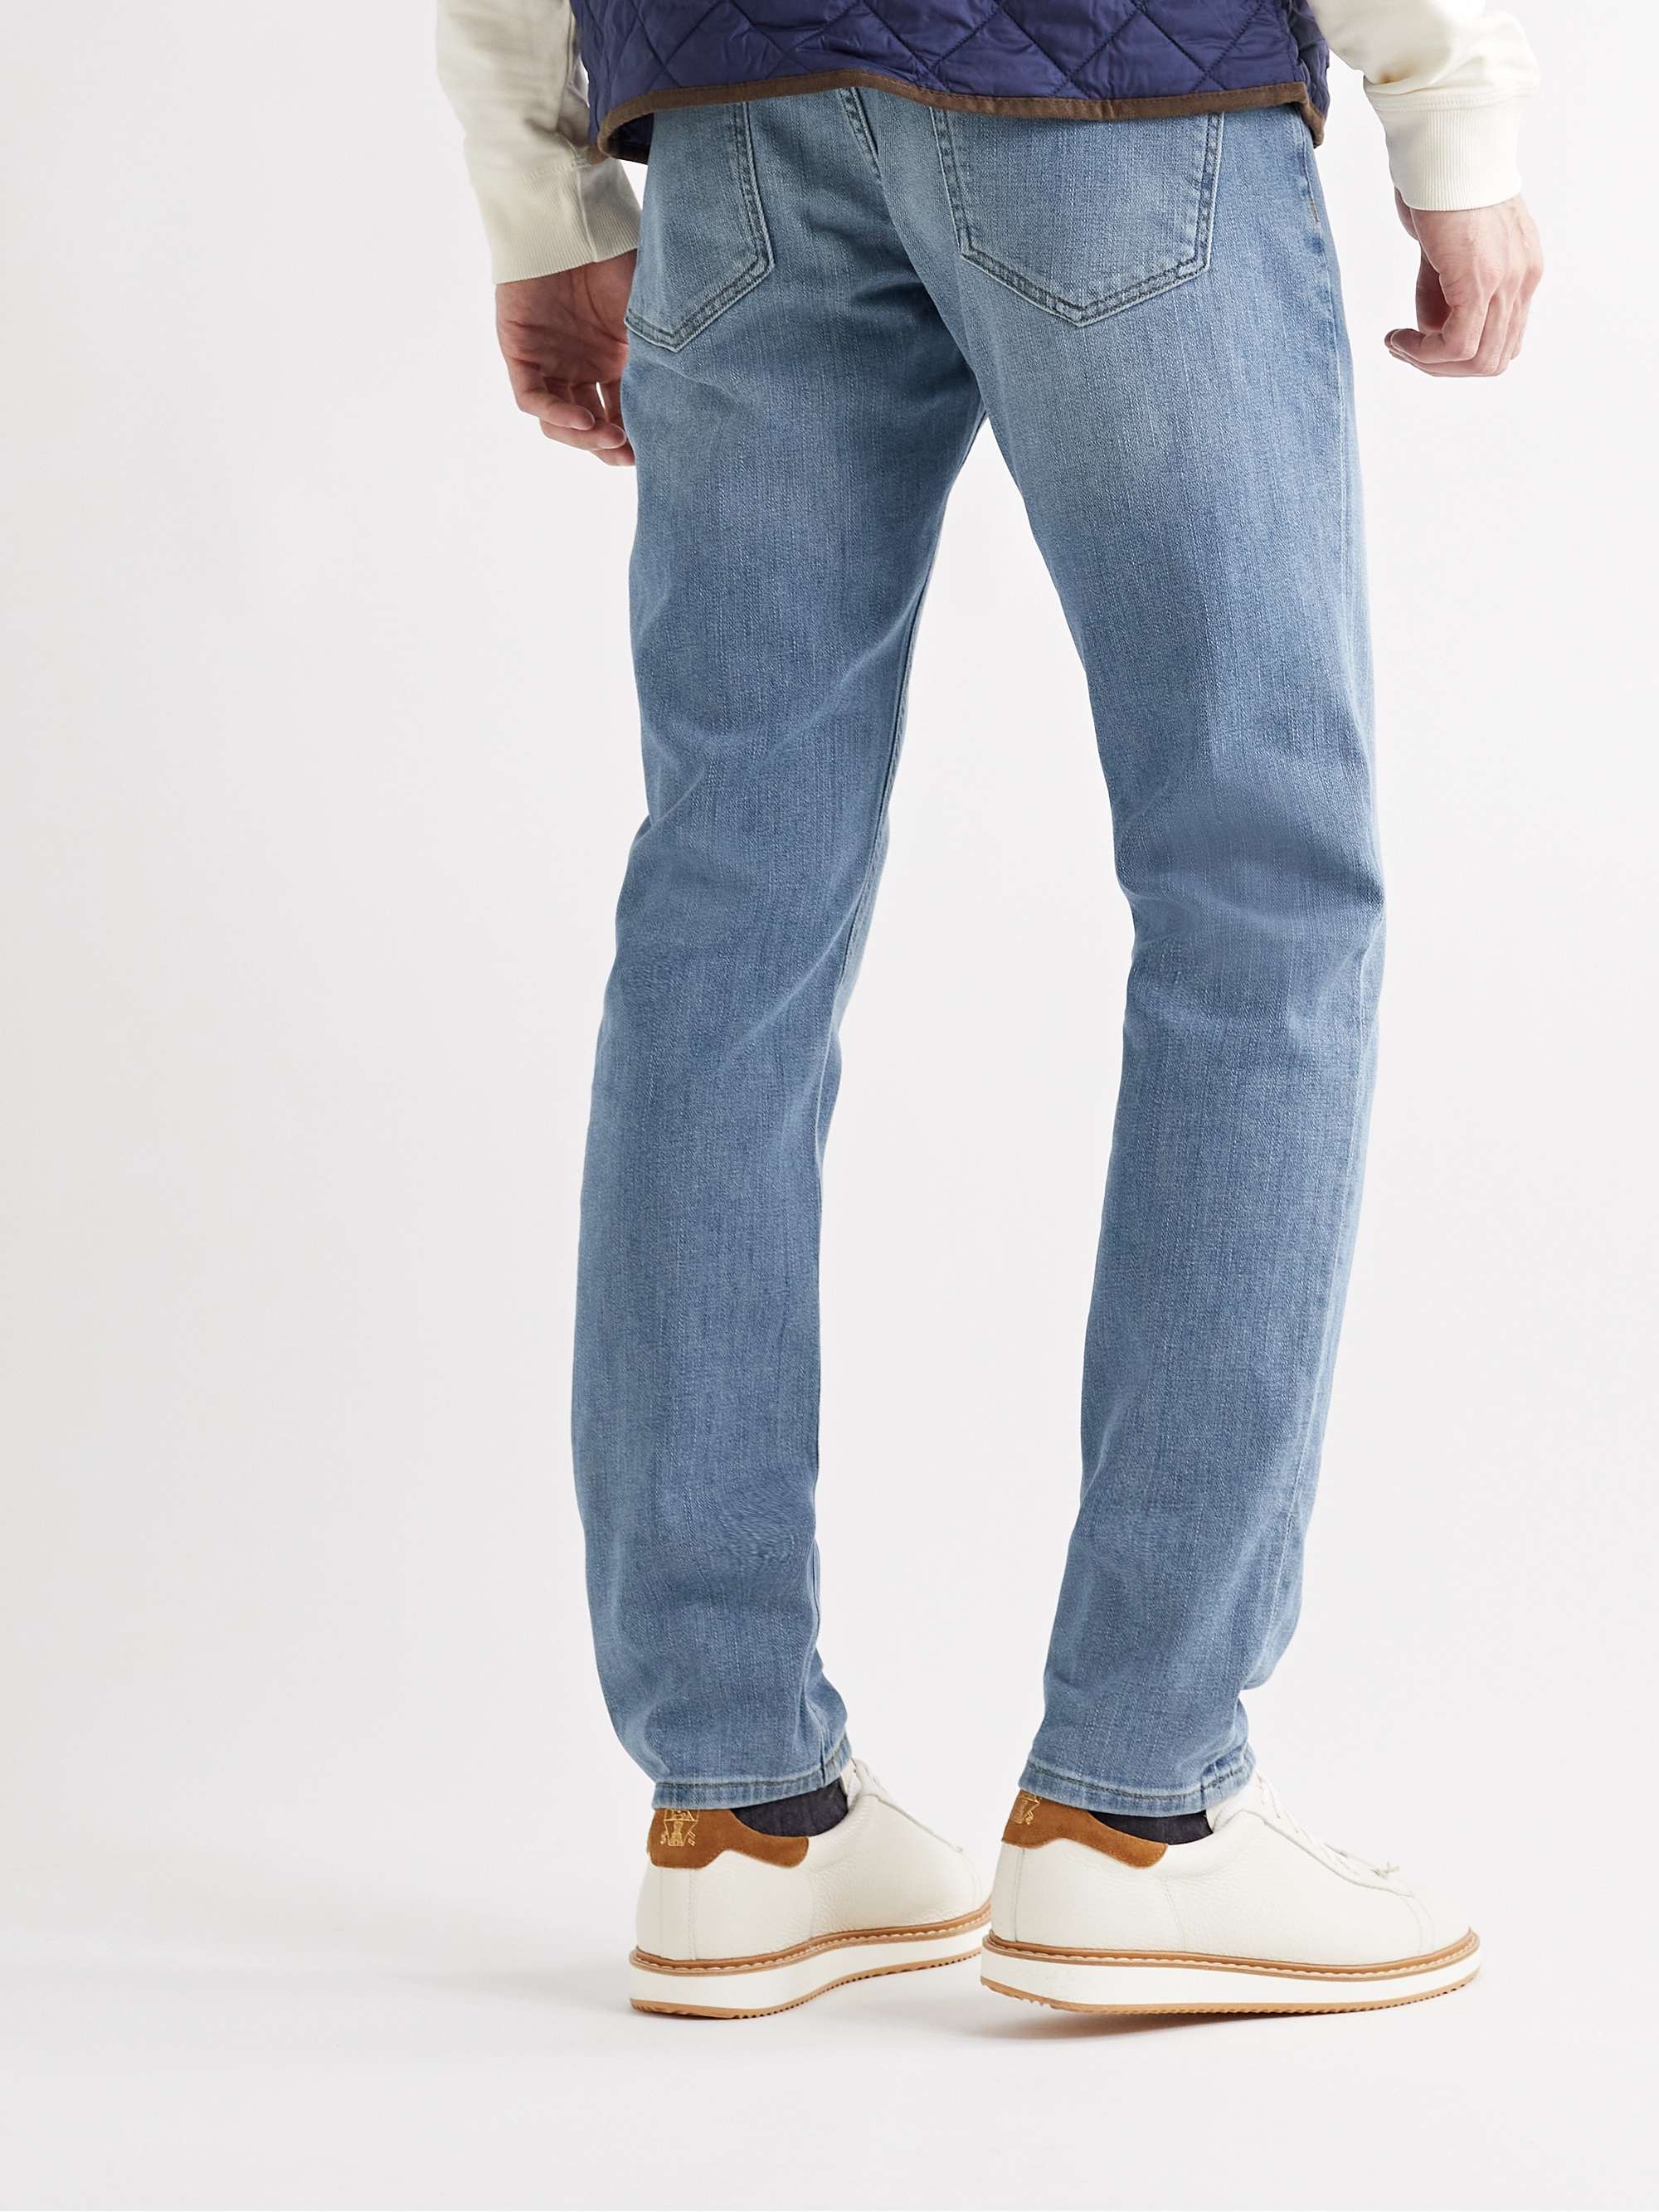 PETER MILLAR Slim-Fit Jeans for Men | MR PORTER